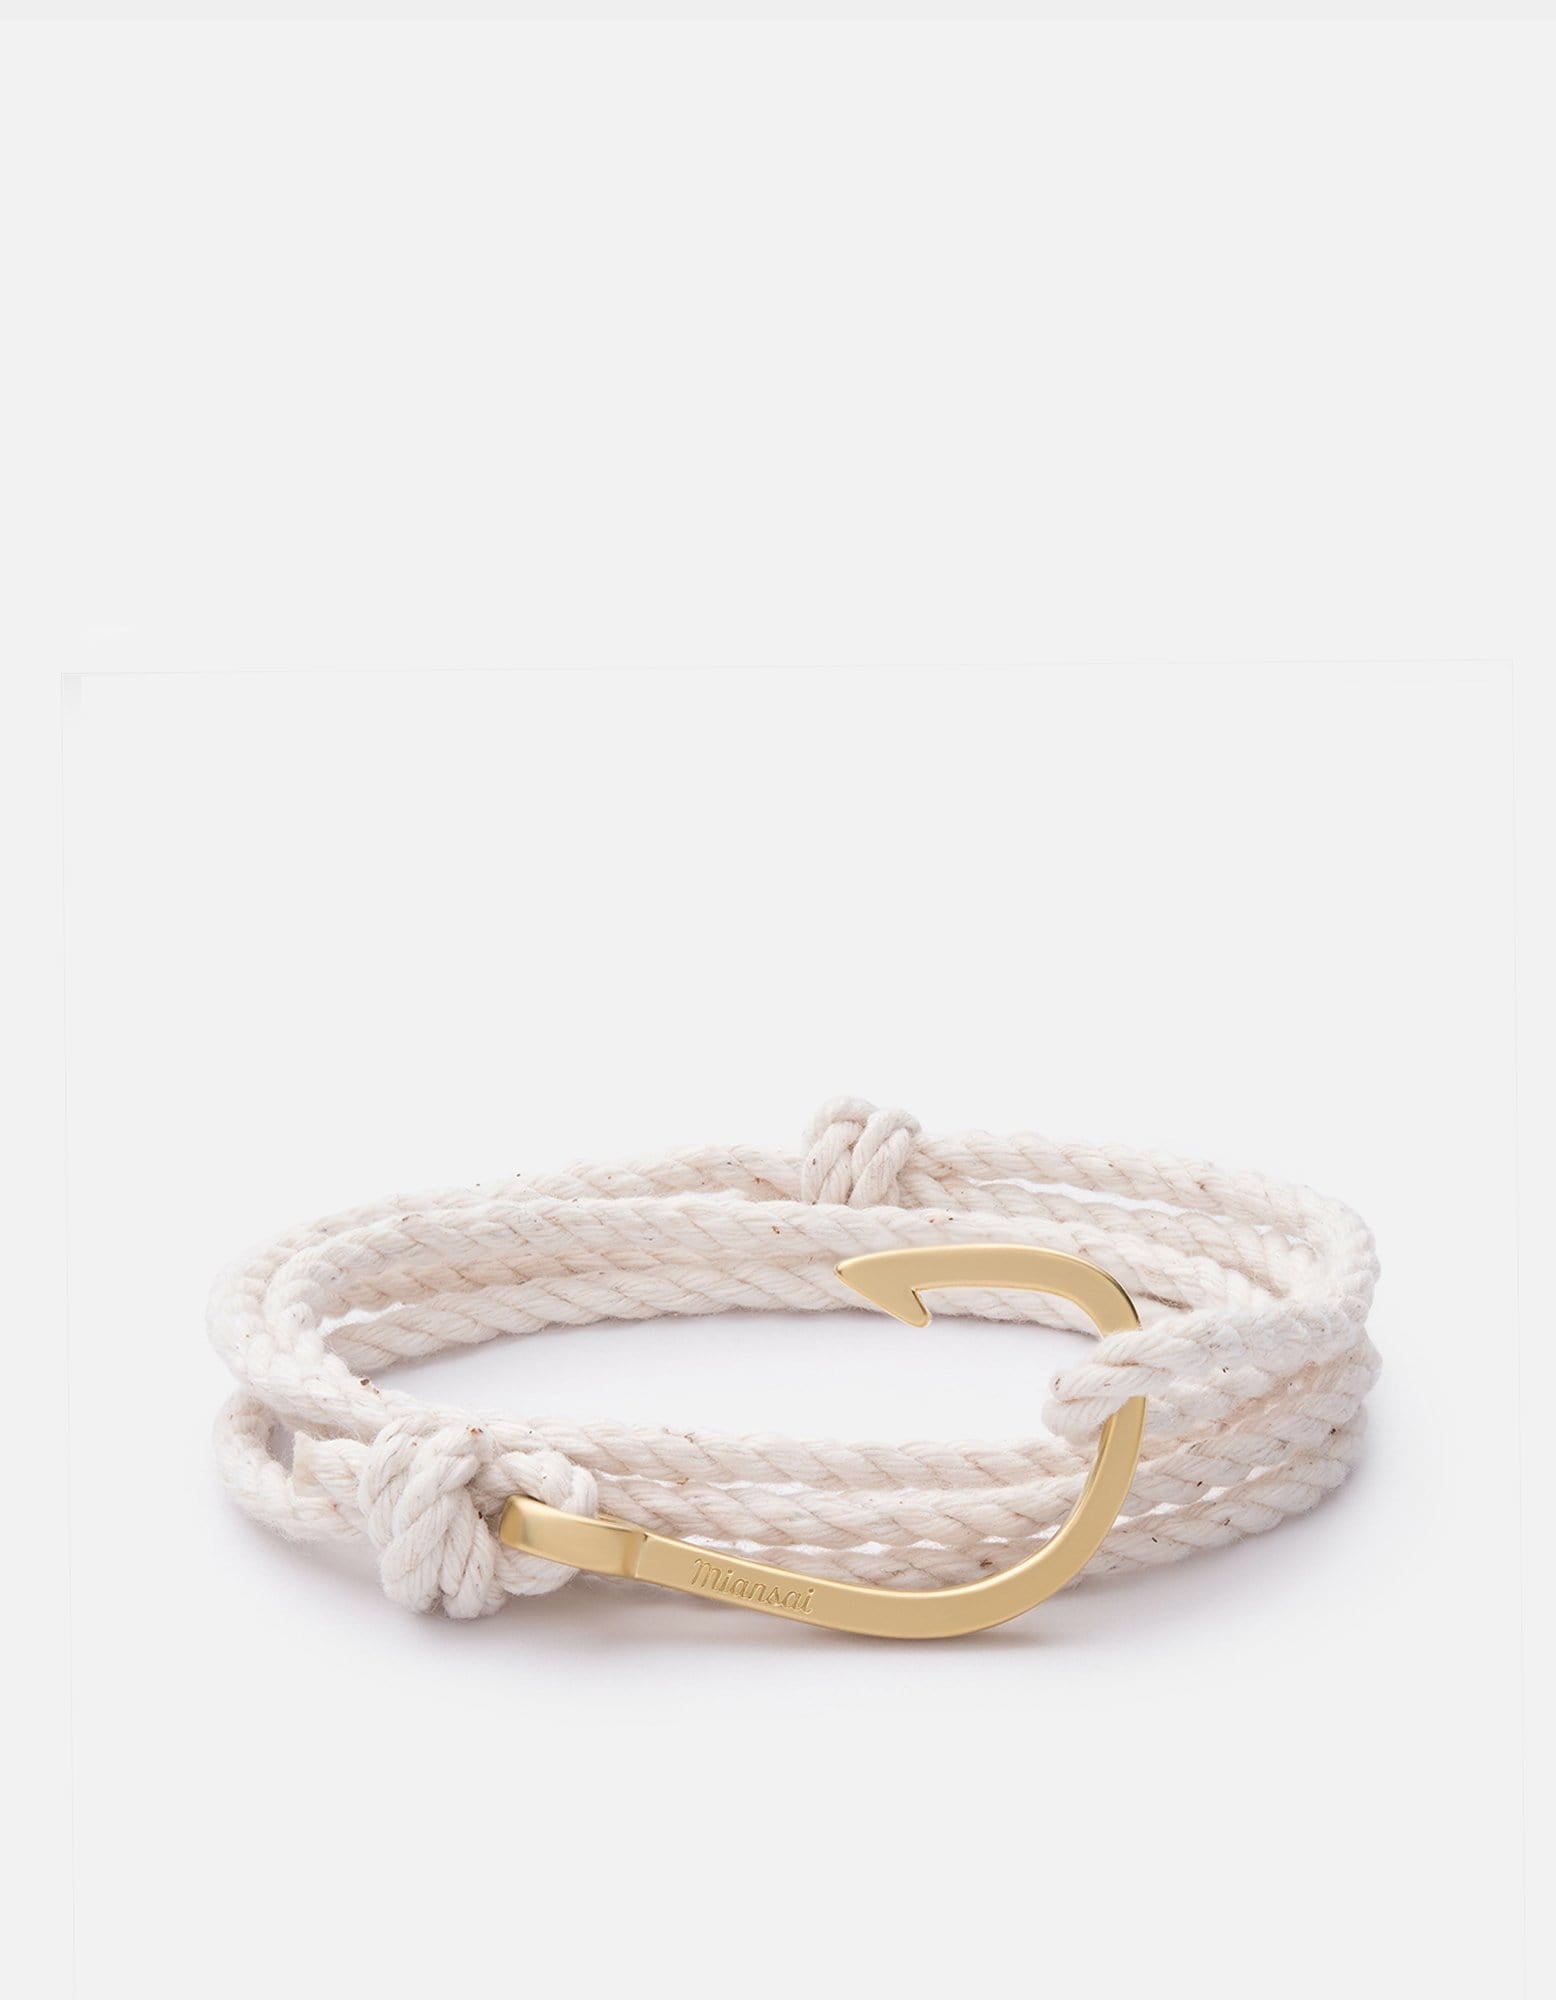 Hook on Rope Bracelet, Matte Gold | Men's Bracelets | Miansai